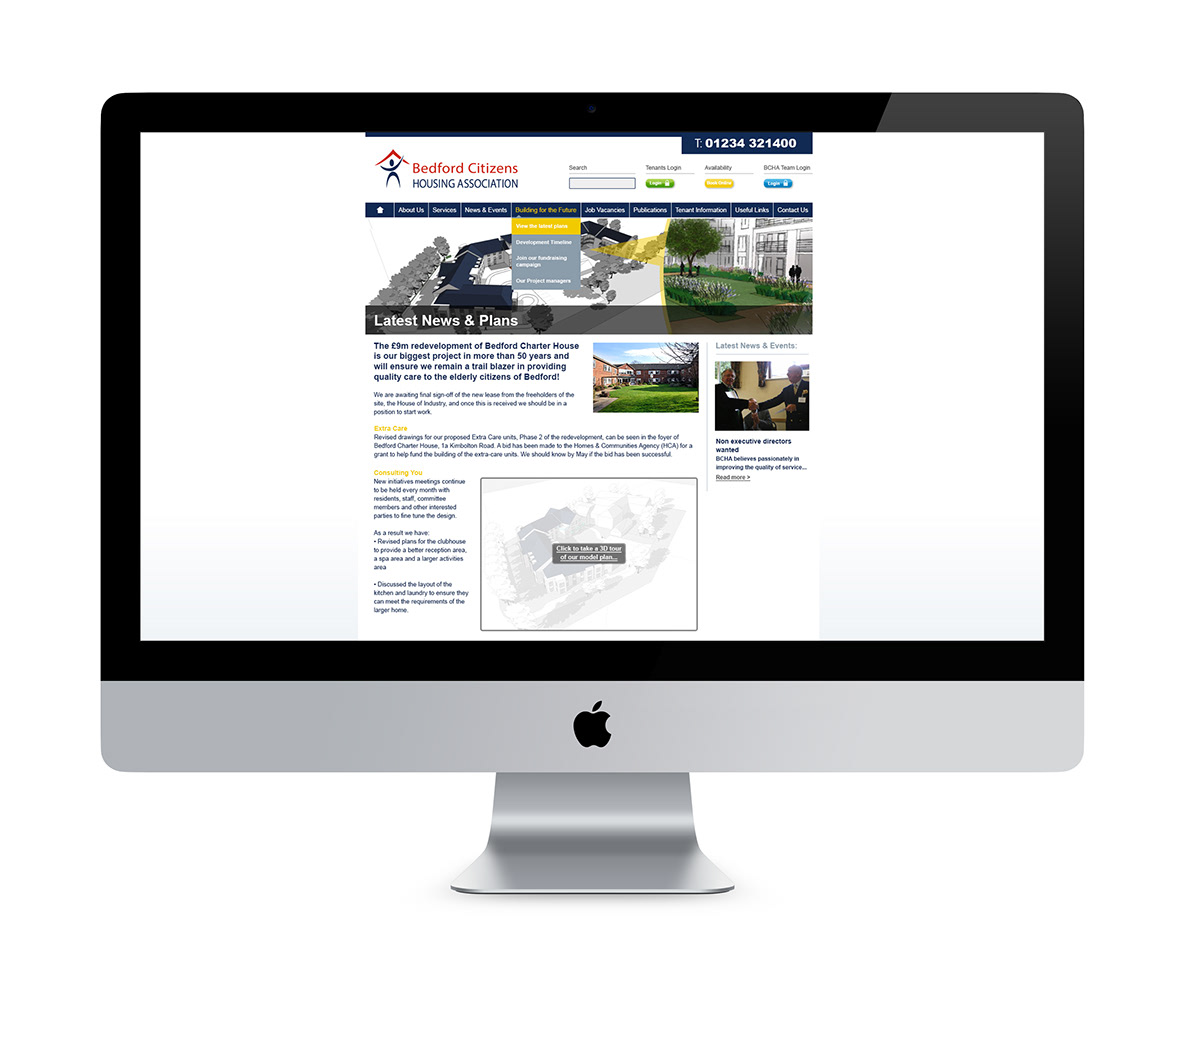 Bedford Citizens housing association Website cms